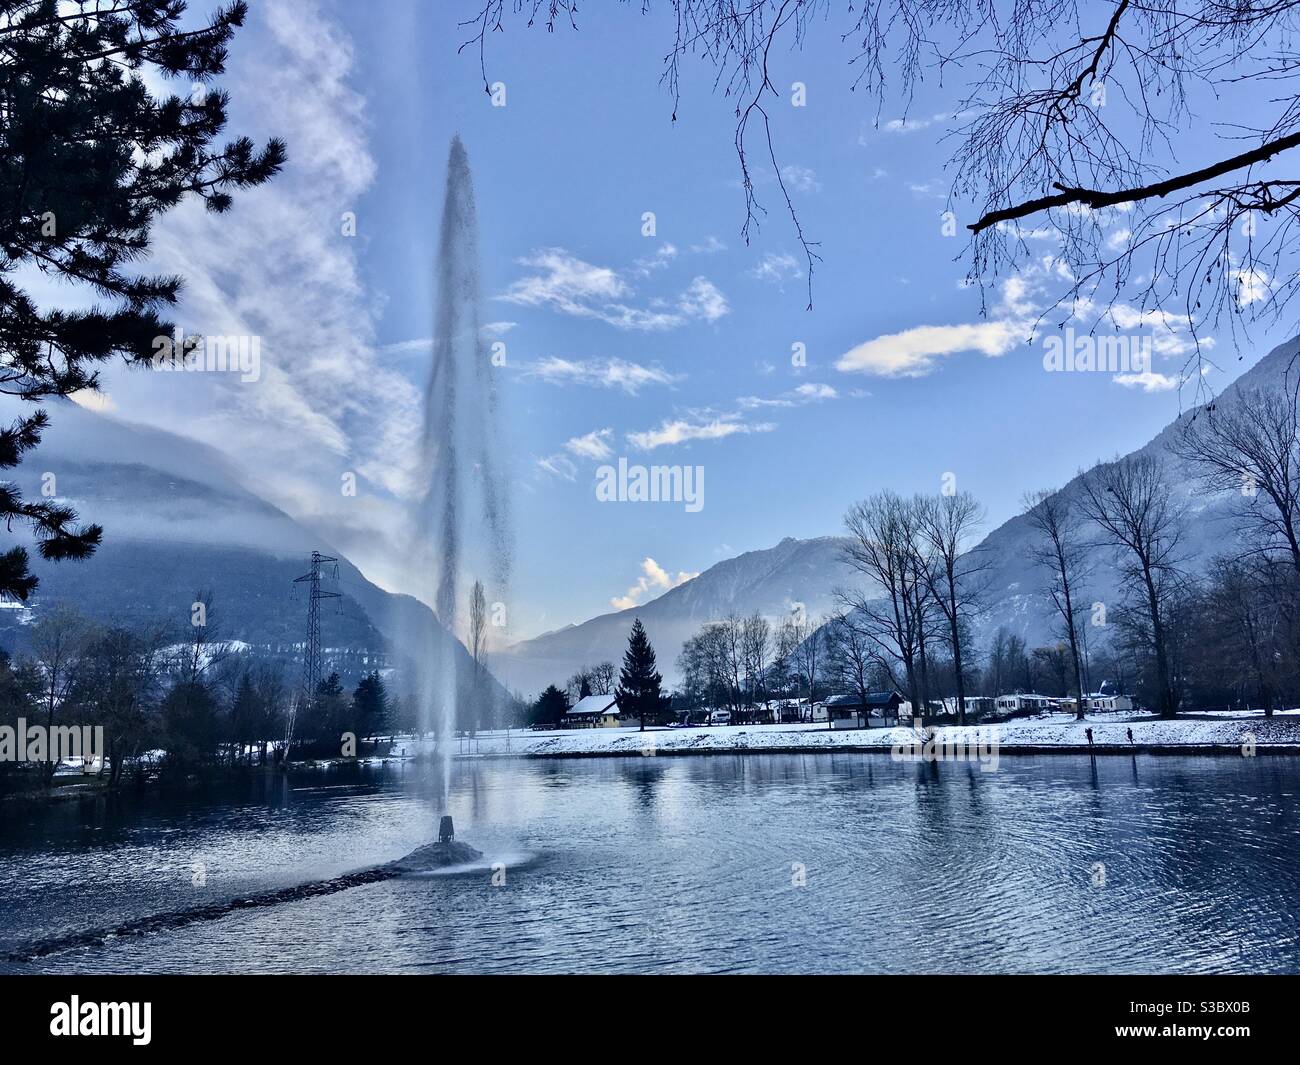 Le Jet d’eau du Lac Bleu de la base de loisirs de Saint-Rémy-de-Maurienne un soir d'hiver en Savoie Foto Stock